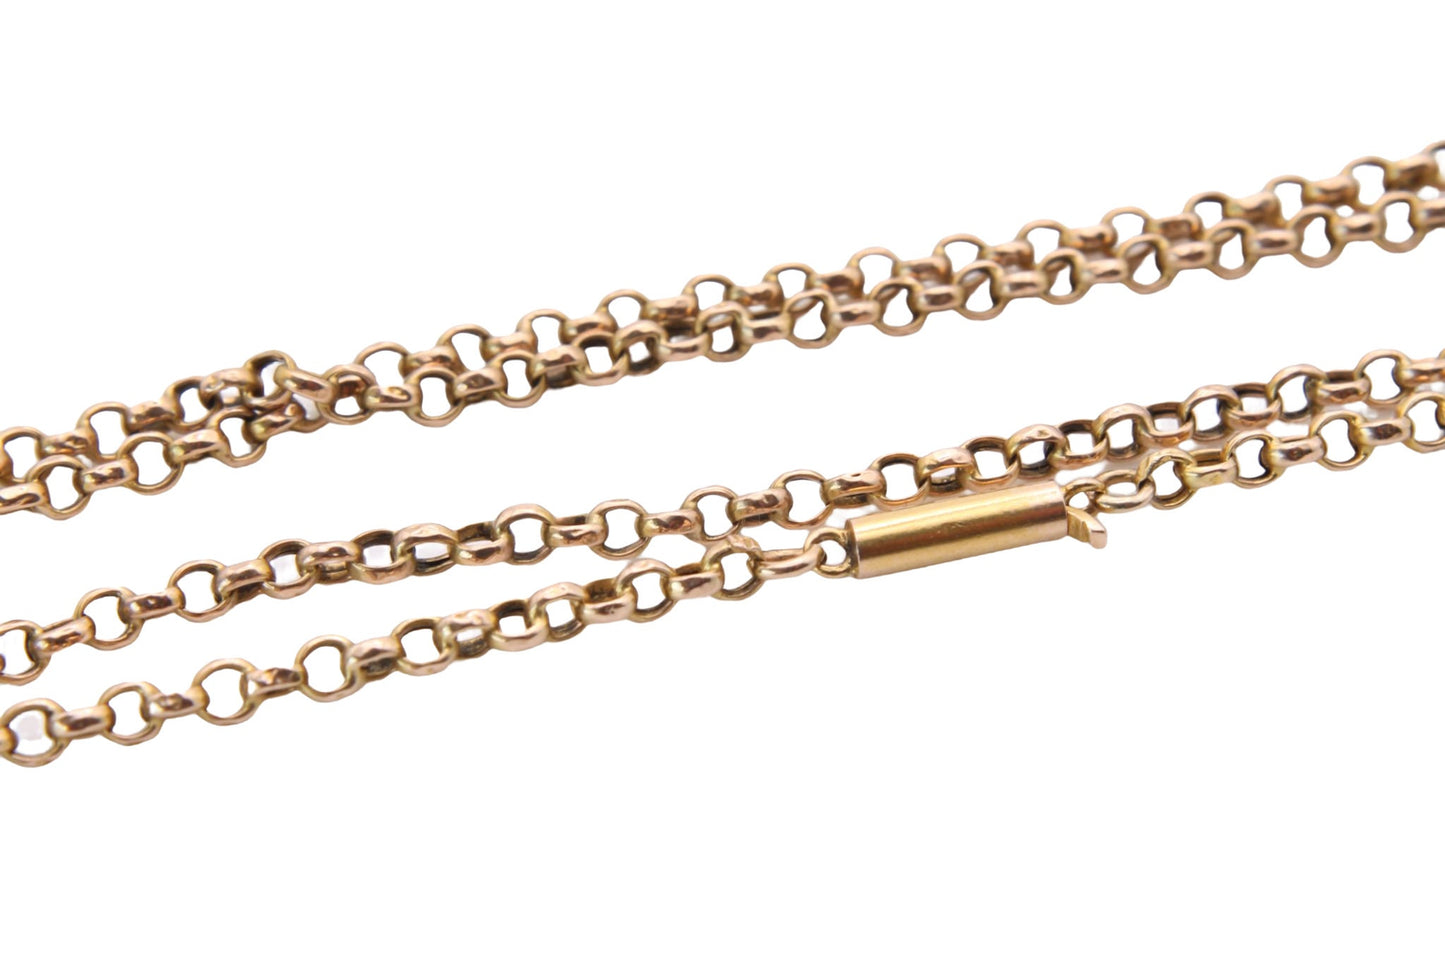 antique-15ct-gold-necklace-belcher-chain-barrel-clasp